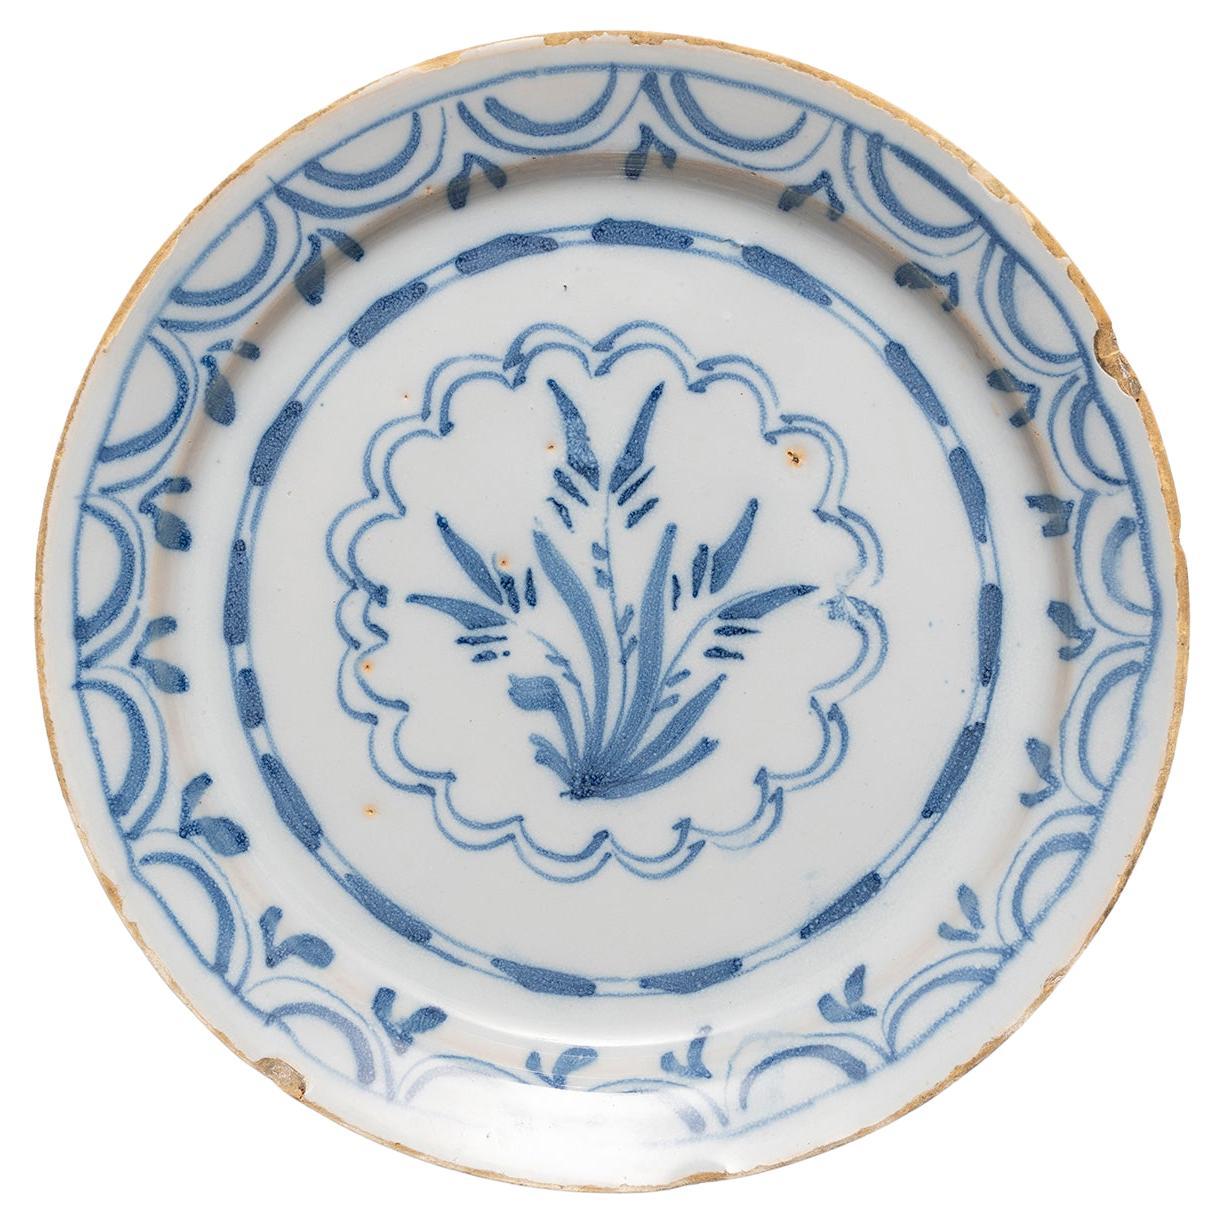 Assiette en faïence de Delft, petite gerbe de fleurs stylisée de Londres, bleue et blanche